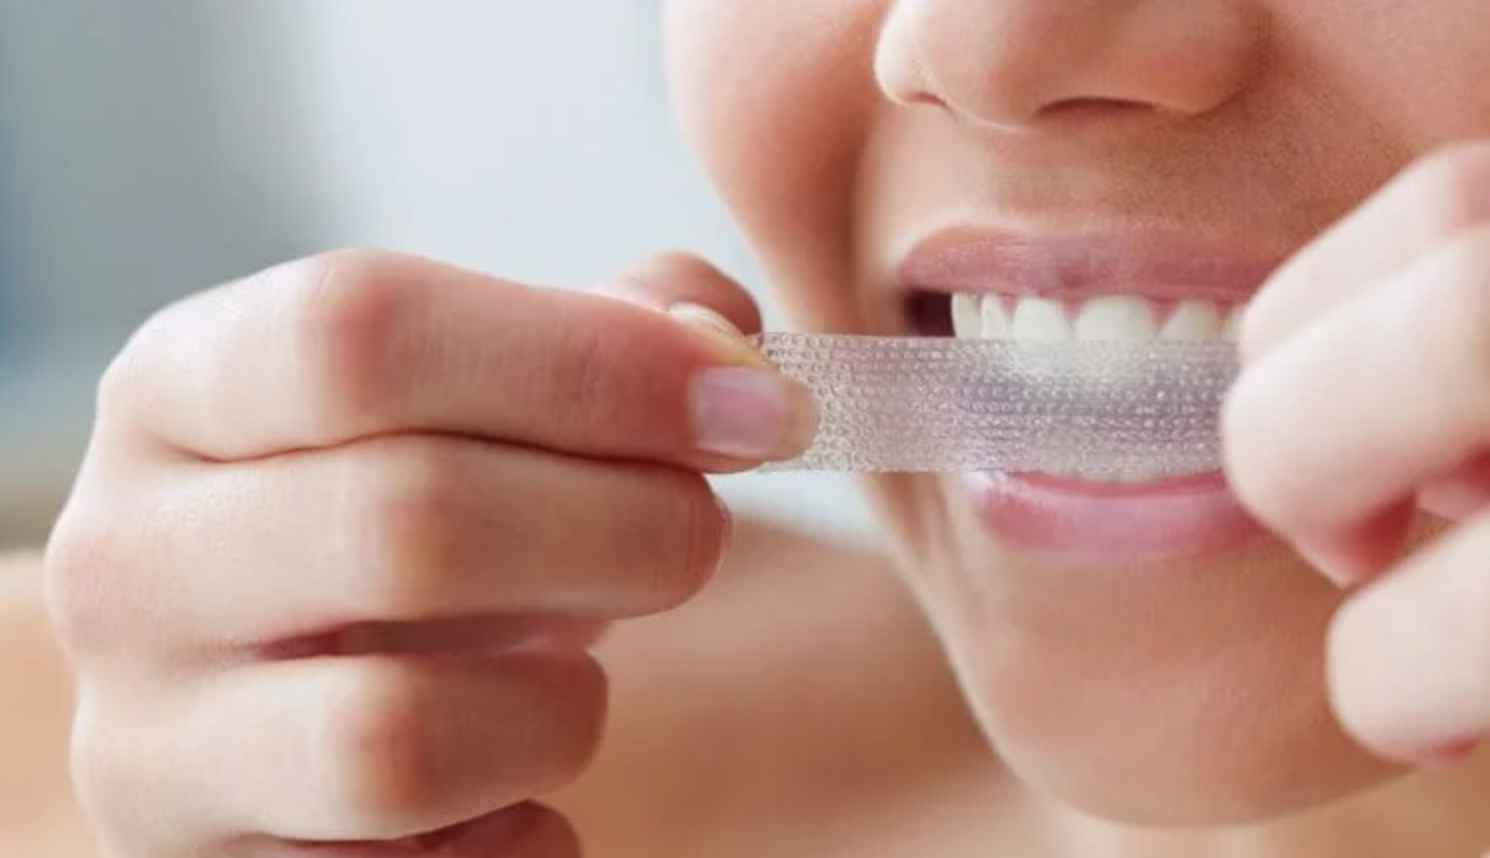 Средства для отбеливания зубов могут быть более опасными, чем считалось ранее